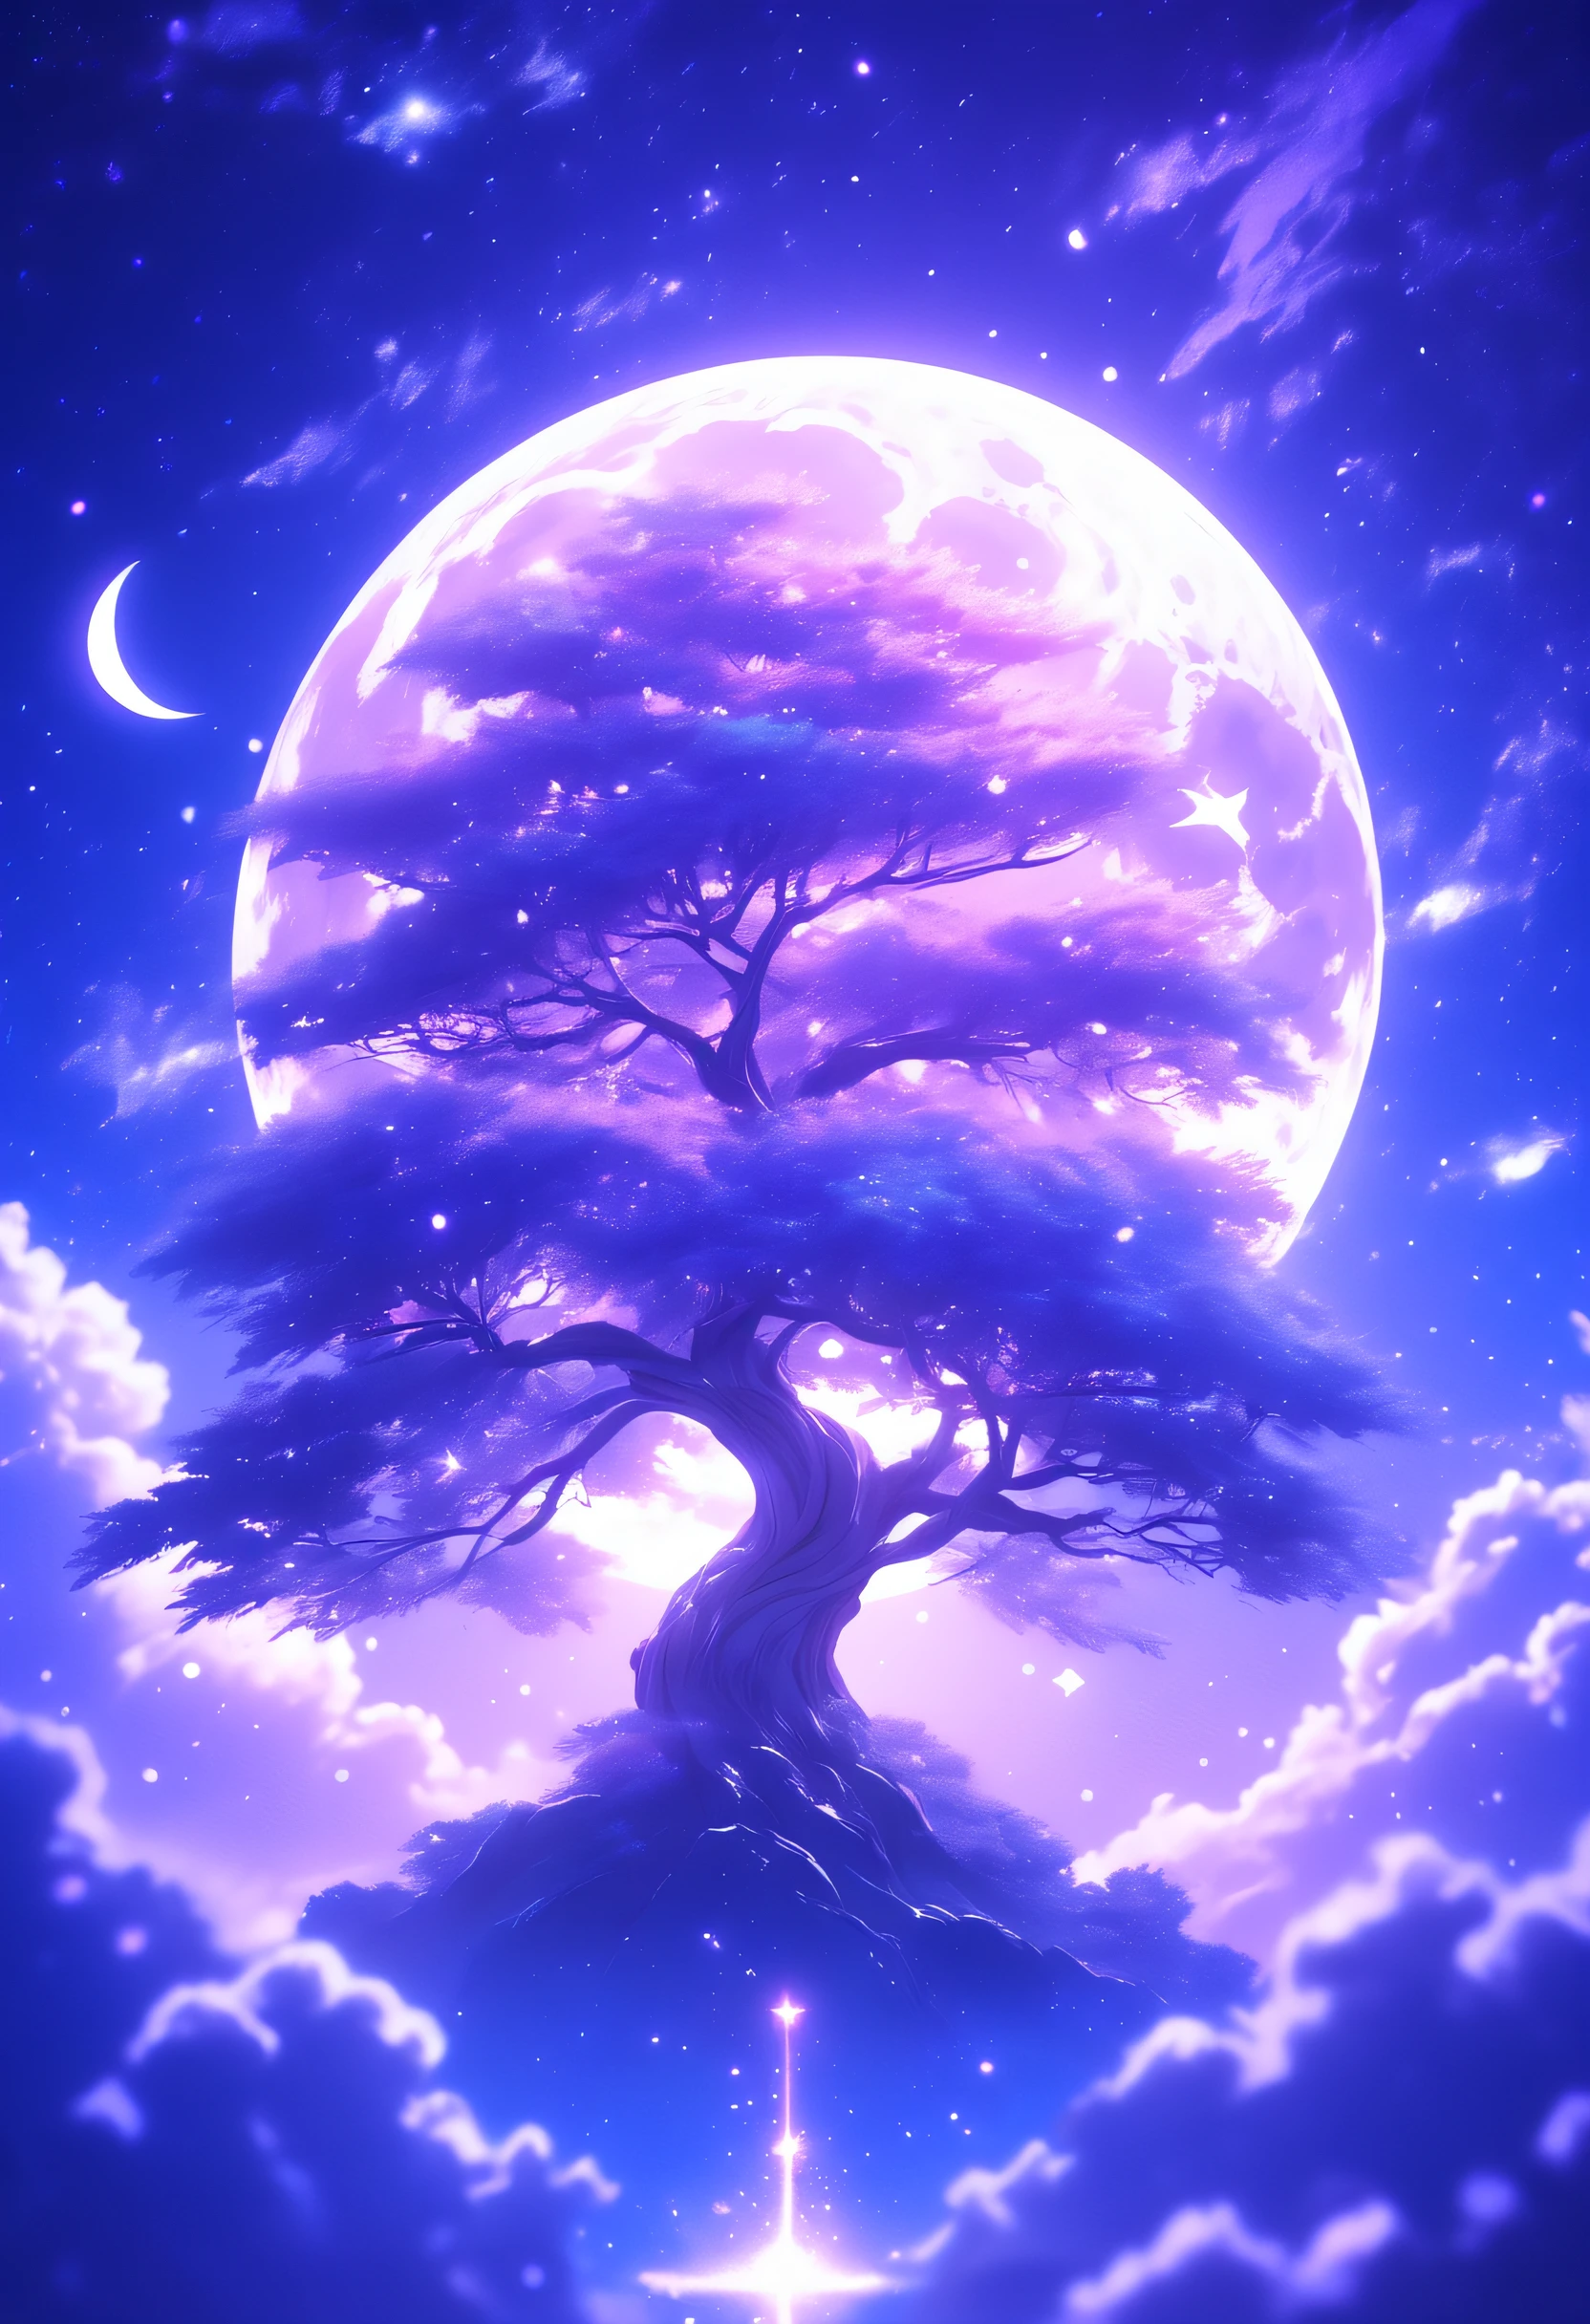 Ein Baum im Weltraum，Mond am Himmel, Hellviolett und helles Indigo, Anime-Kunst, Nightcore, Fantastische Collage, glimmering, UHD image, Einfluss des Zen-Buddhismus,verträumt,16k